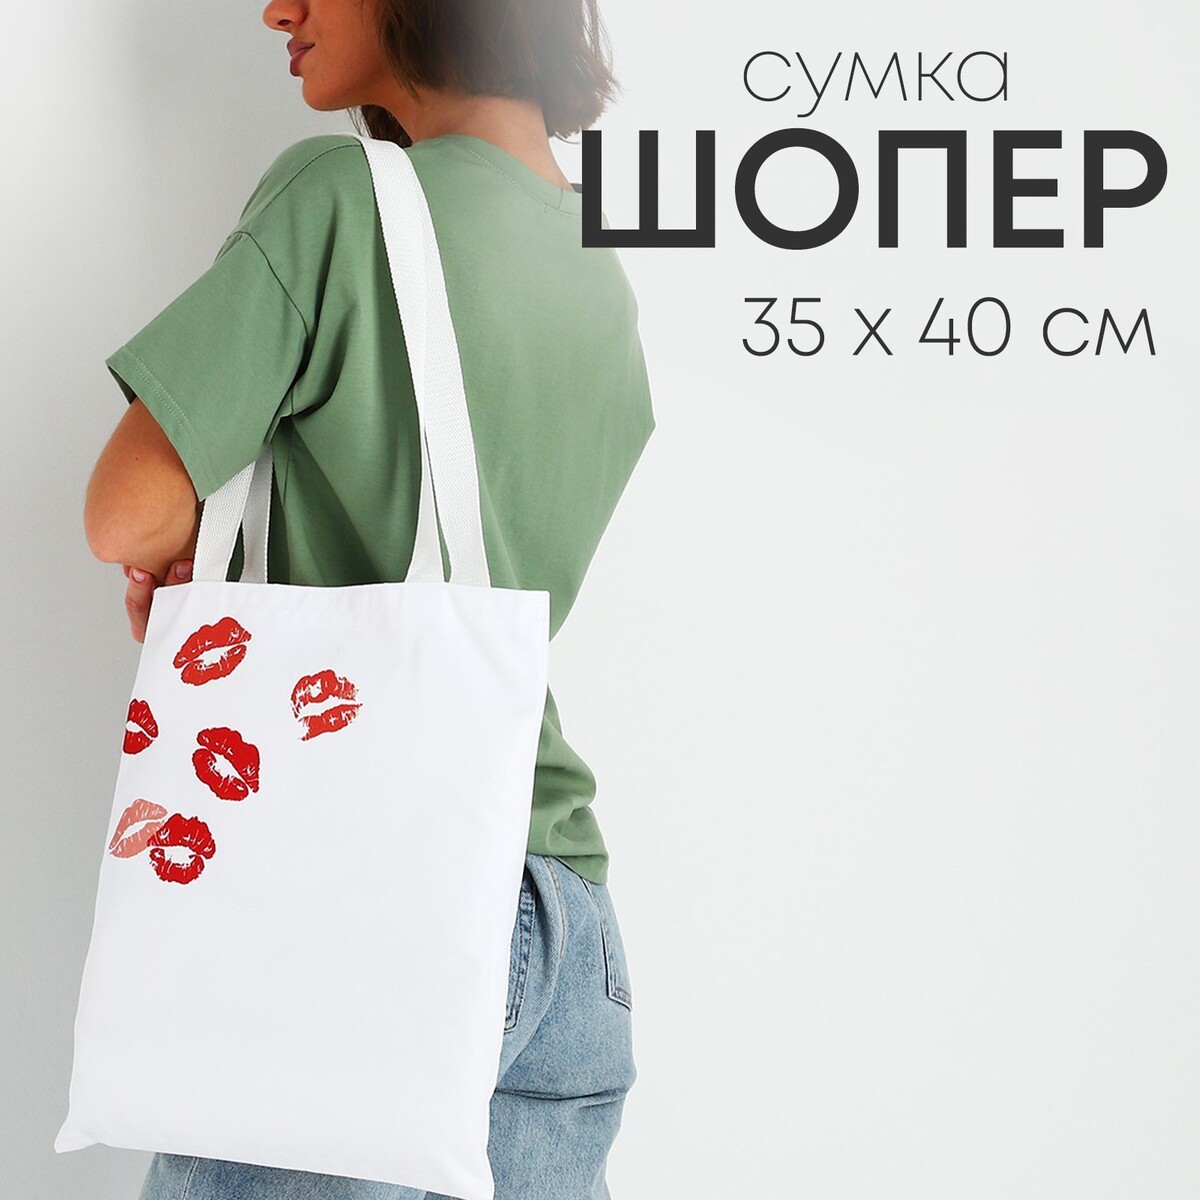 Сумка шопер белая сумка шопер с принтом на петербургскую тематику